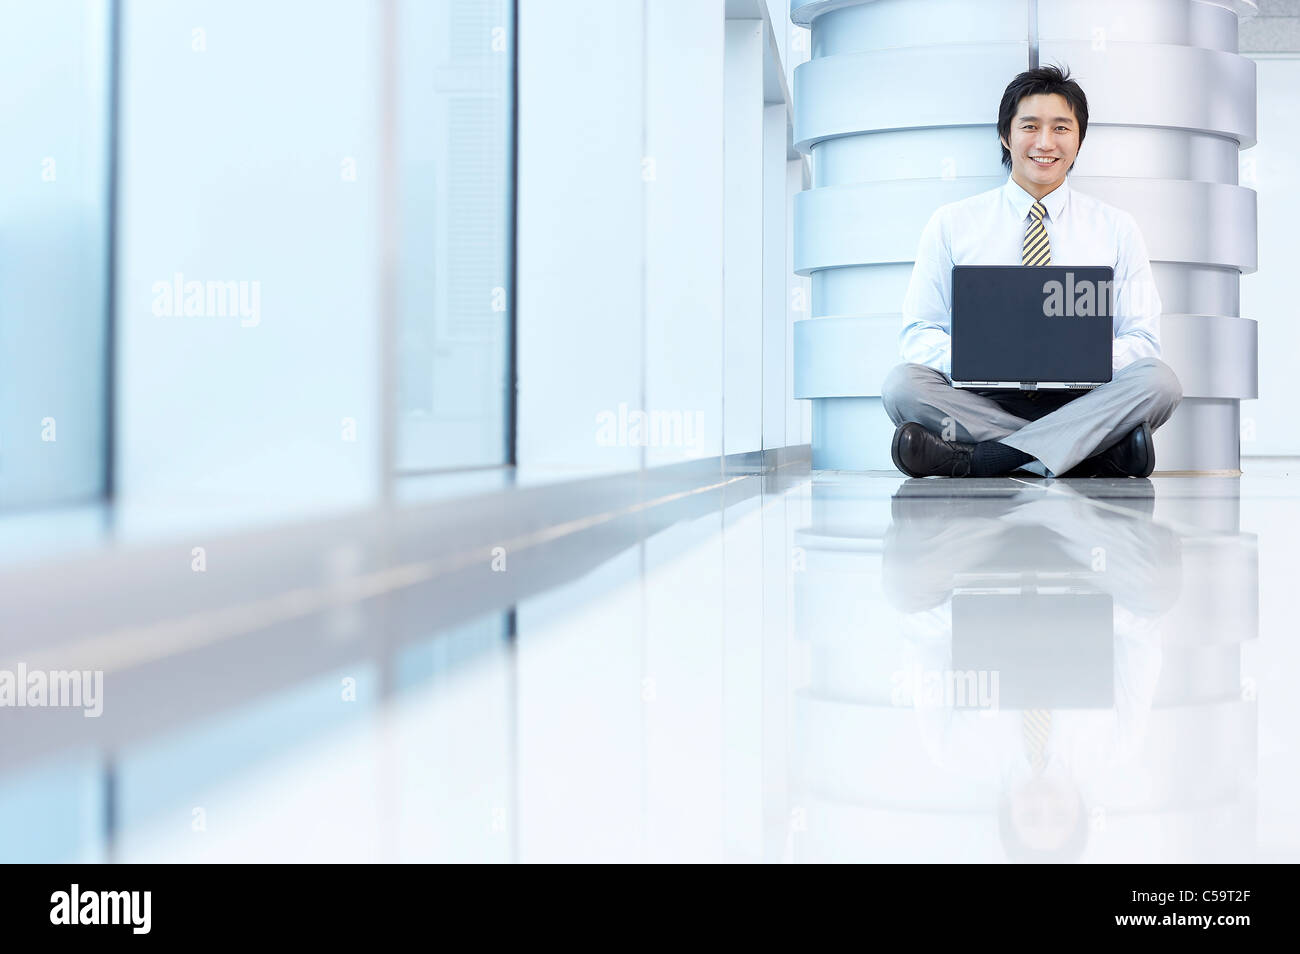 Portrait of businessman sitting par pilier, using laptop Banque D'Images